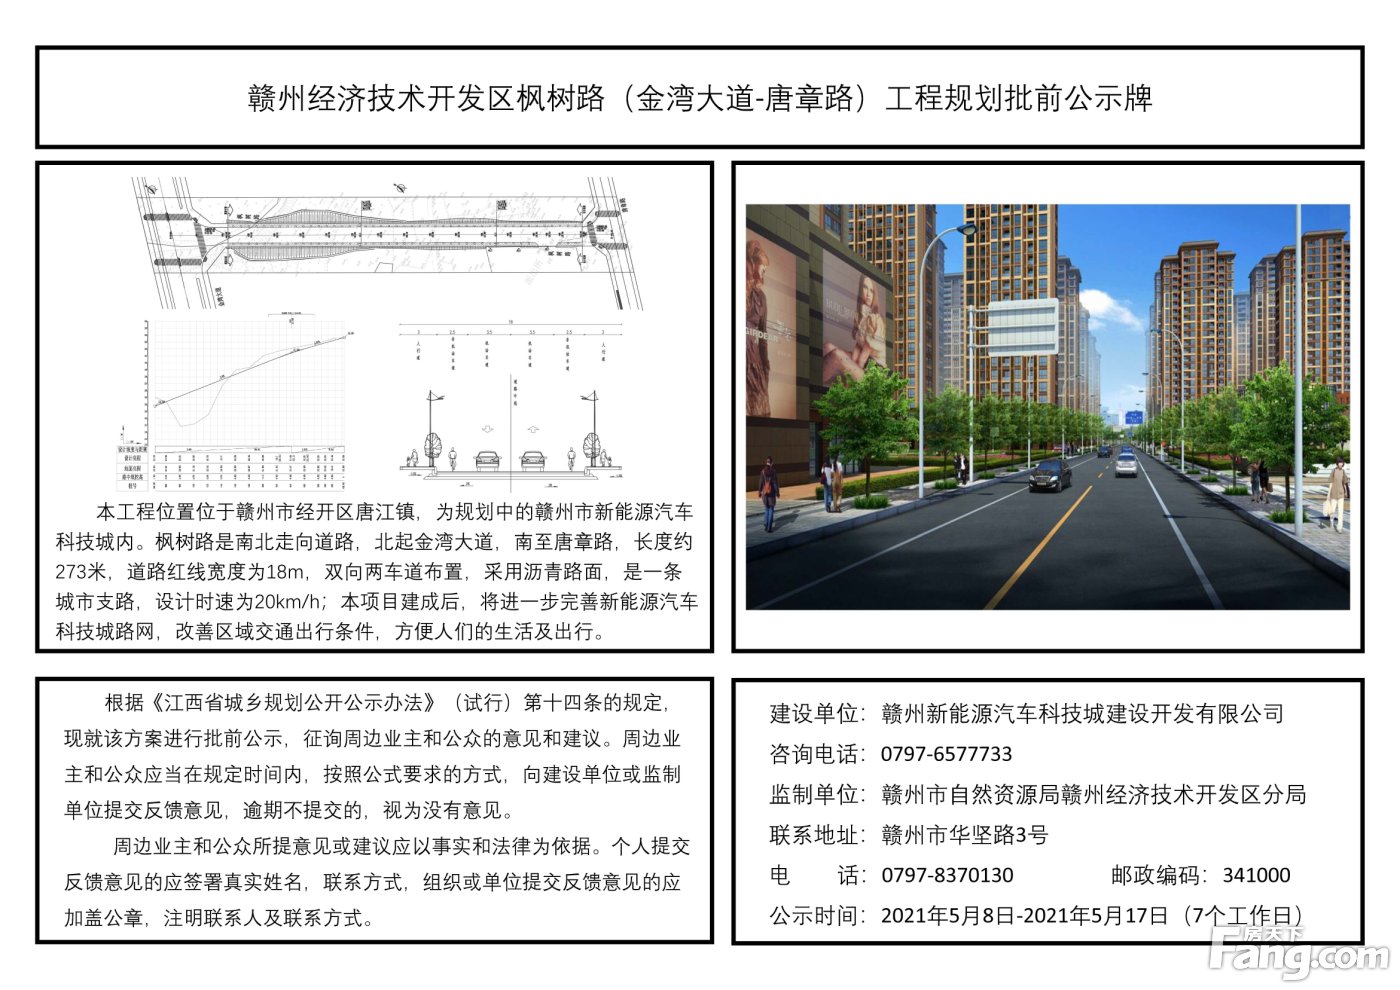 经开区将新建多条道路 效果图公示